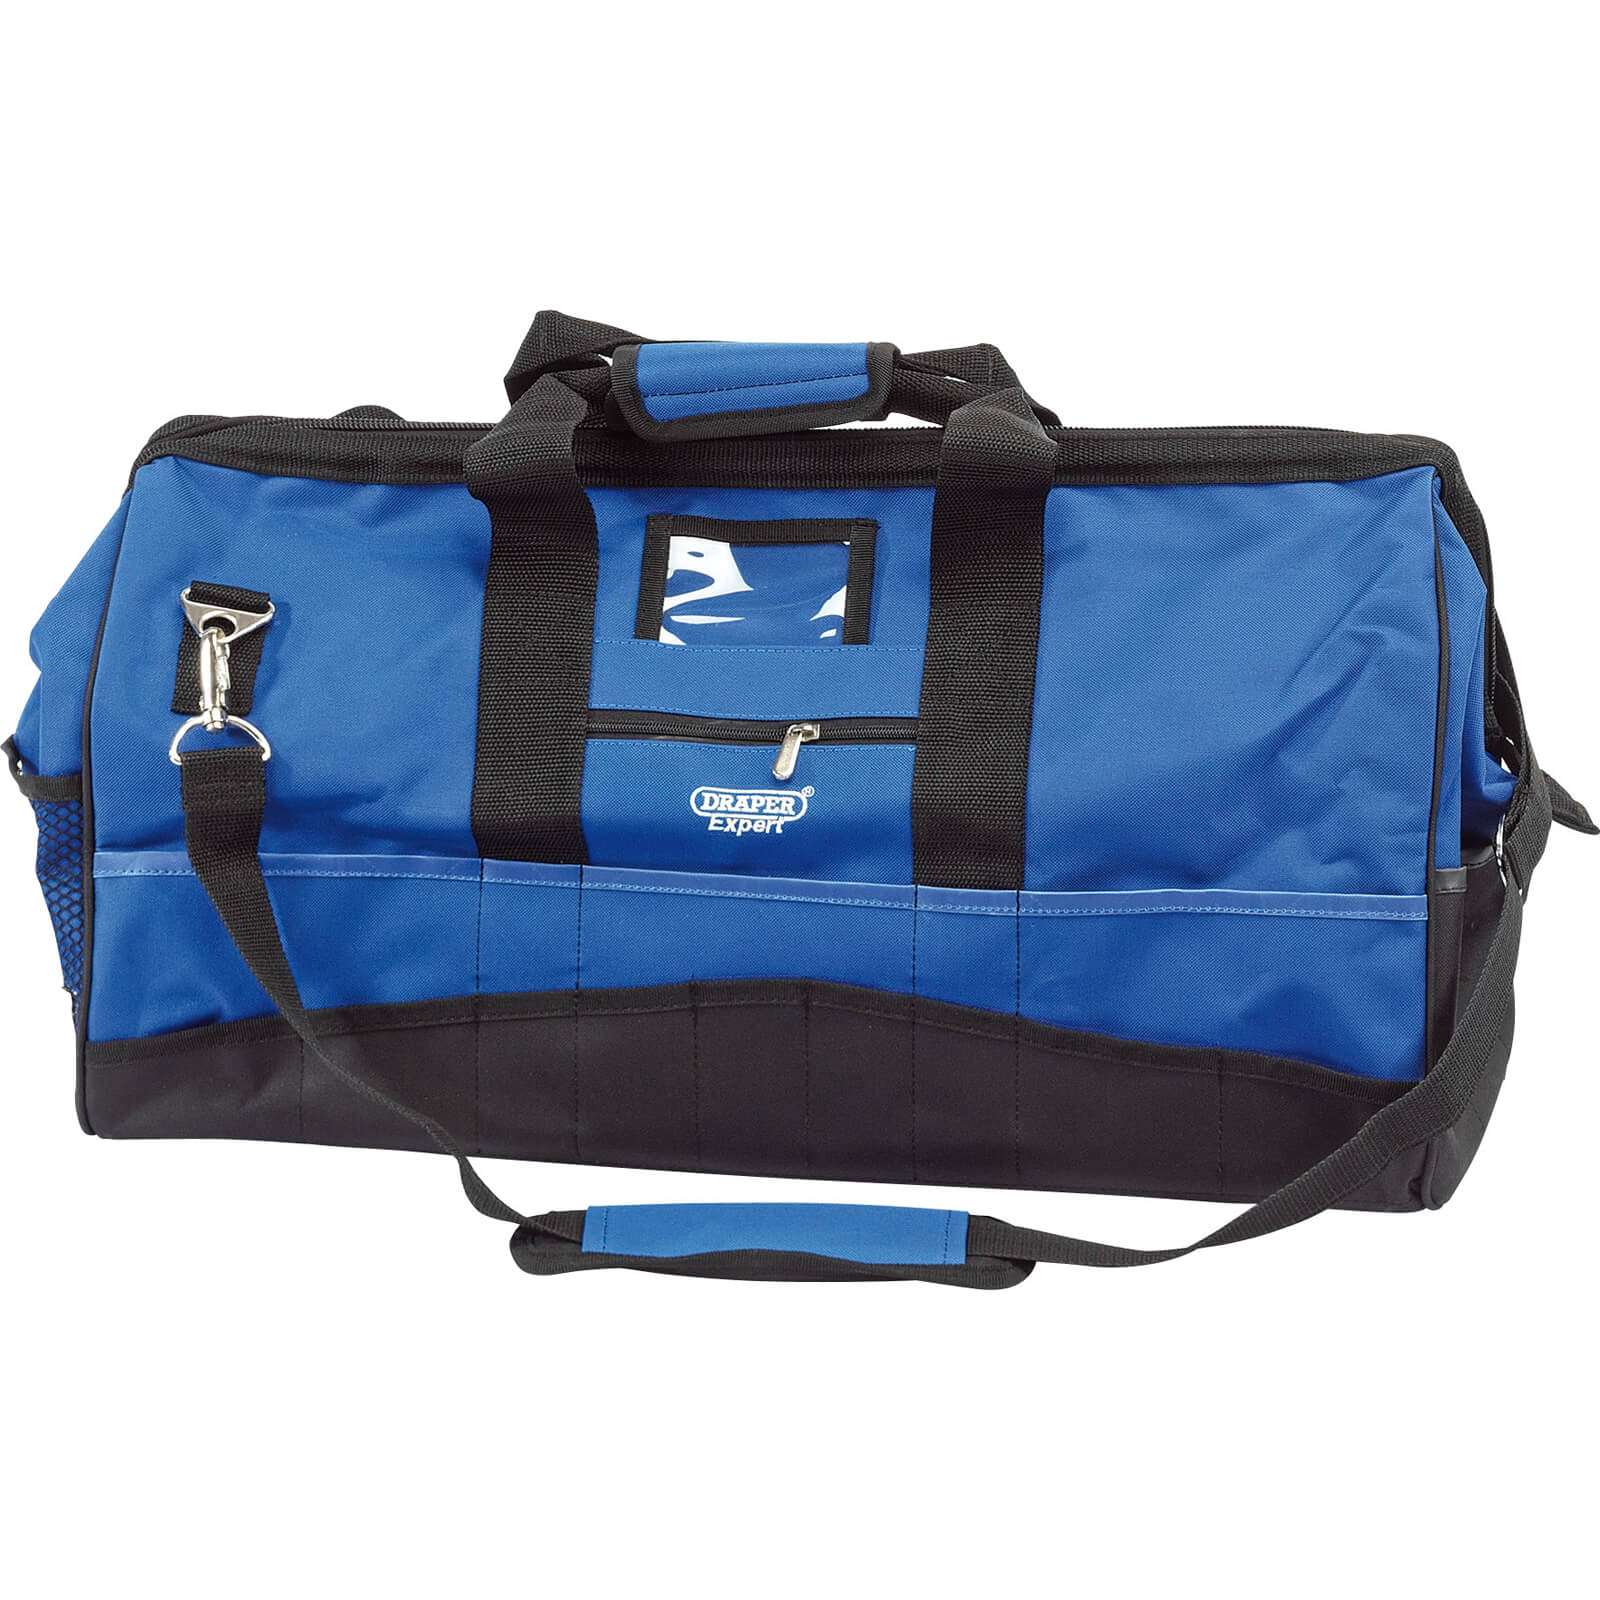 Draper Expert Tool Bag | Tool Bags